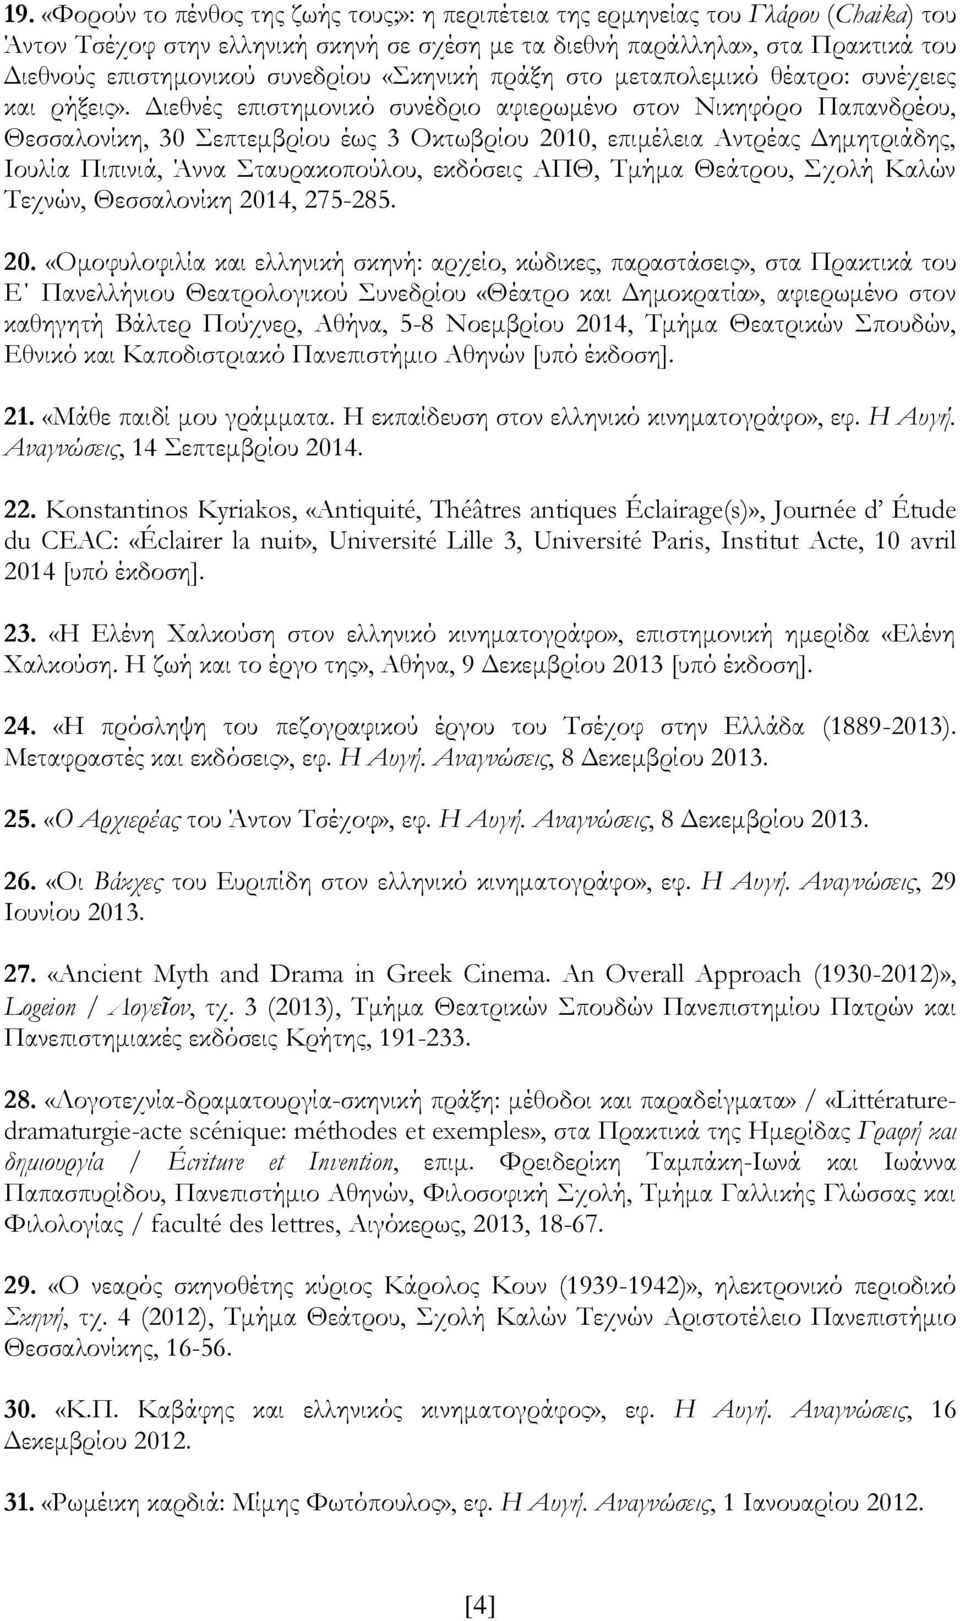 Διεθνές επιστημονικό συνέδριο αφιερωμένο στον Νικηφόρο Παπανδρέου, Θεσσαλονίκη, 30 Σεπτεμβρίου έως 3 Οκτωβρίου 2010, επιμέλεια Αντρέας Δημητριάδης, Ιουλία Πιπινιά, Άννα Σταυρακοπούλου, εκδόσεις ΑΠΘ,